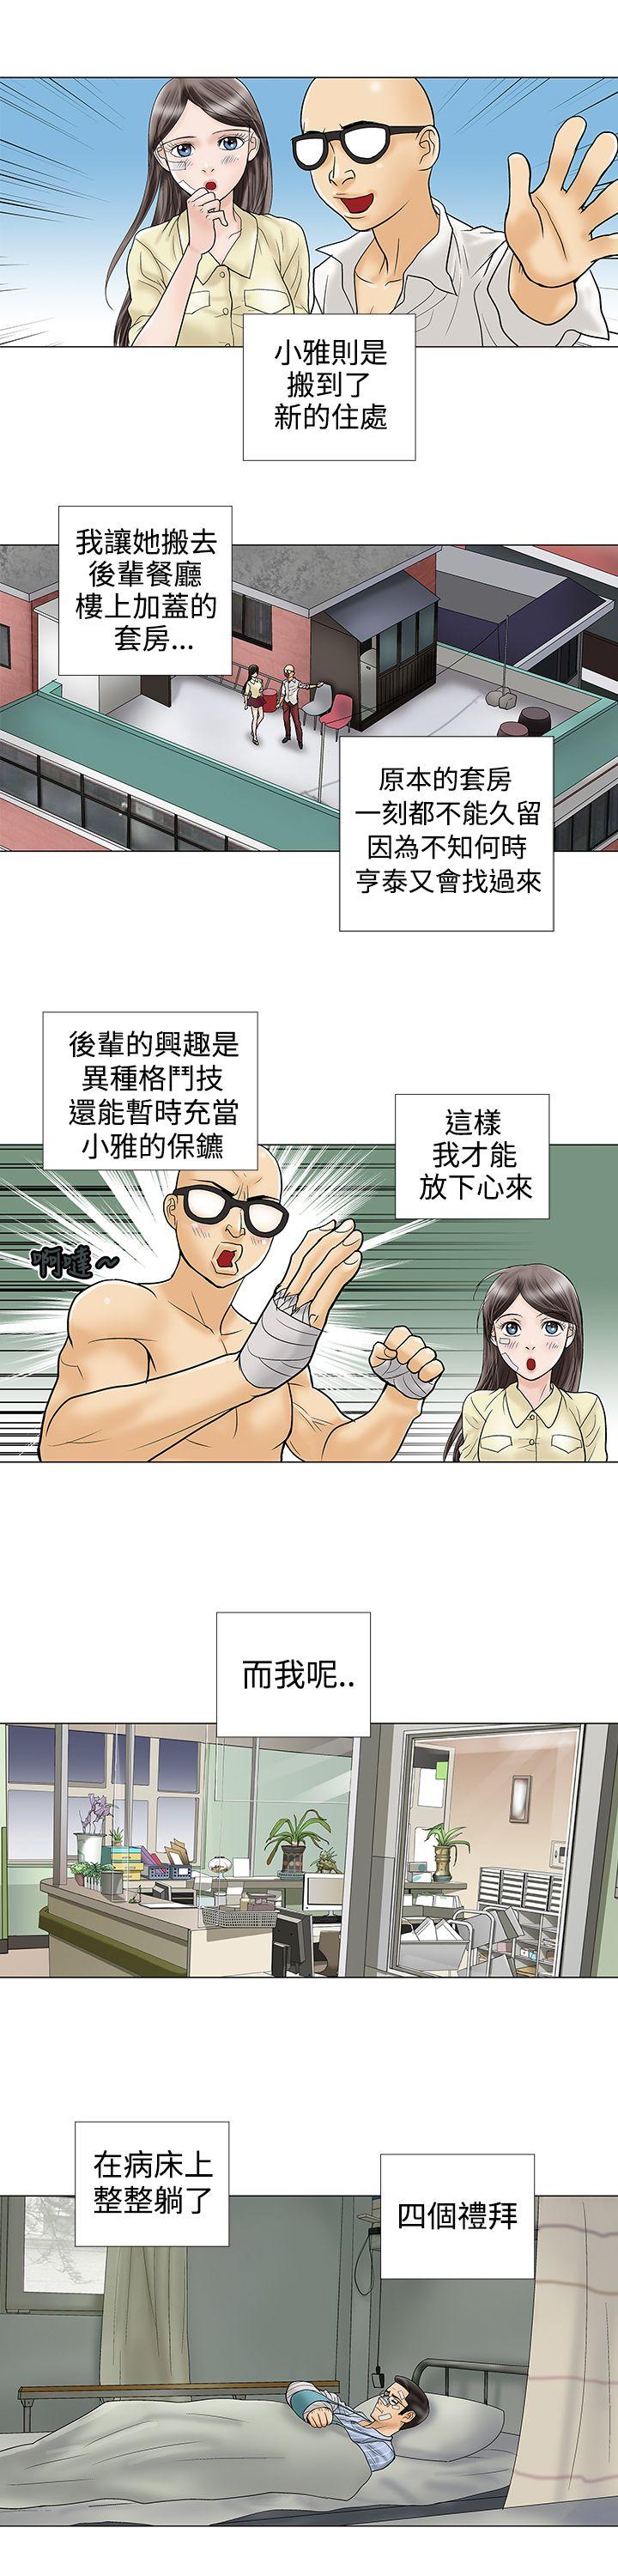 危险的爱(完结)  第10话 漫画图片5.jpg